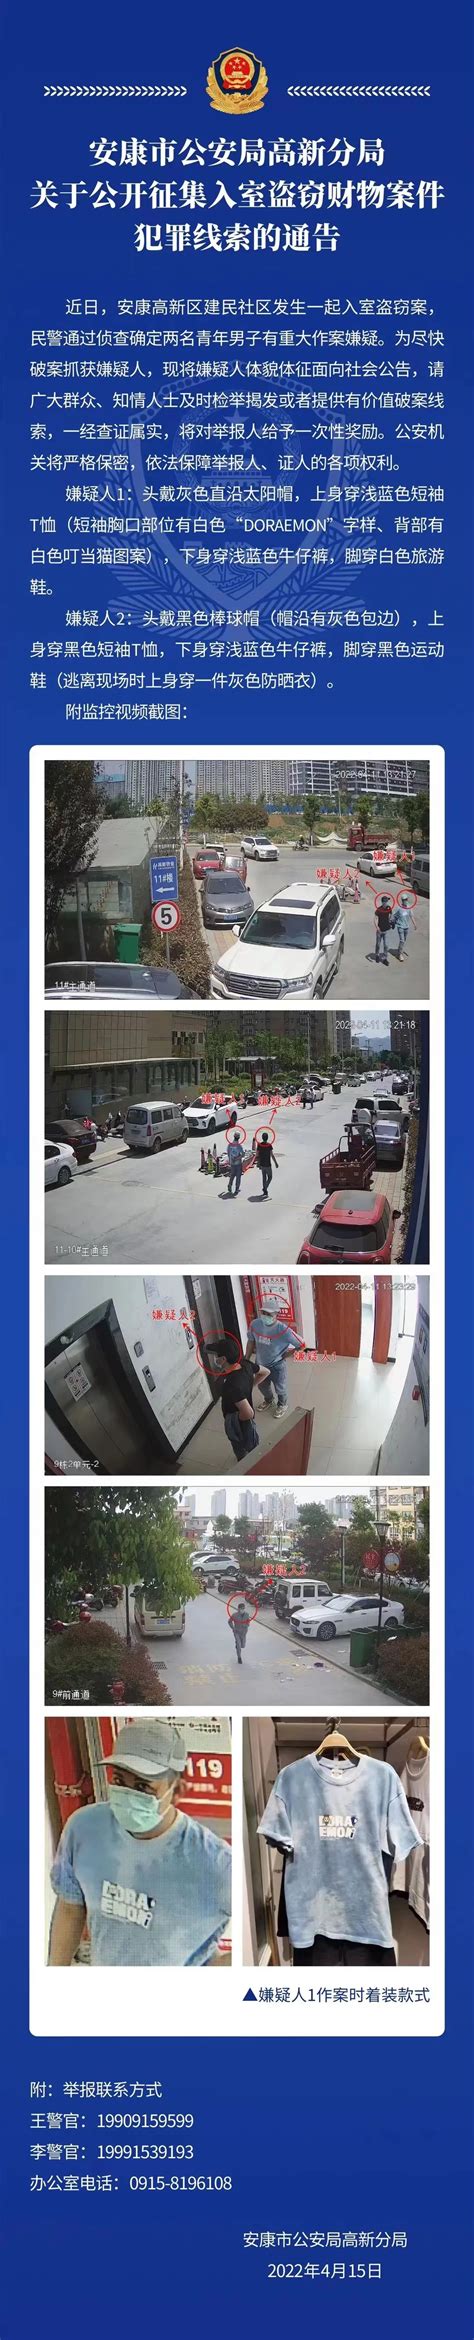 陕西安康2.27三人当街被杀案今晨告破 警方通报全文-闽南网